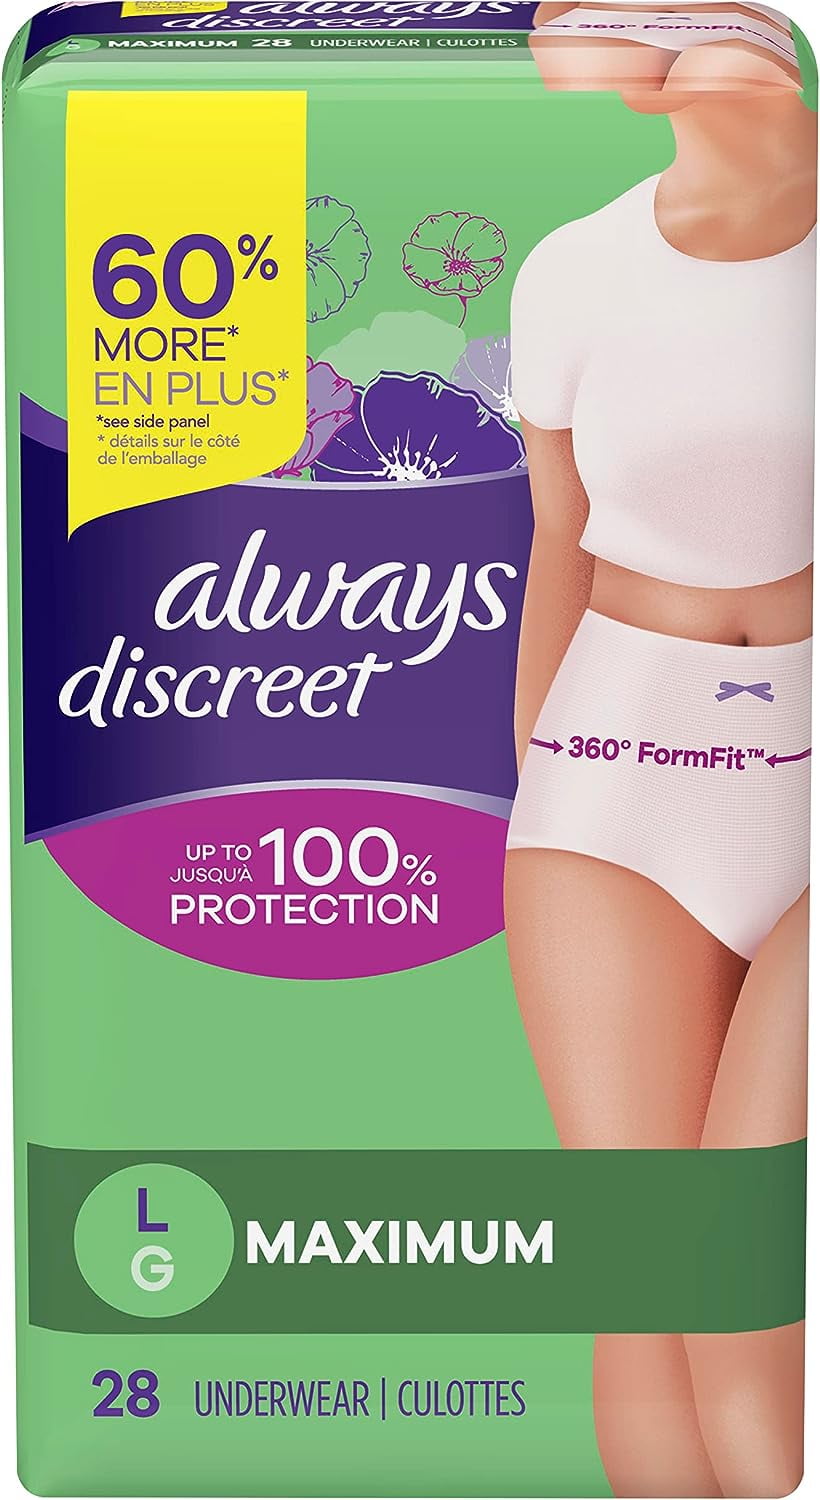 Presto Overnight Discreet Underwear With OdorSecure®